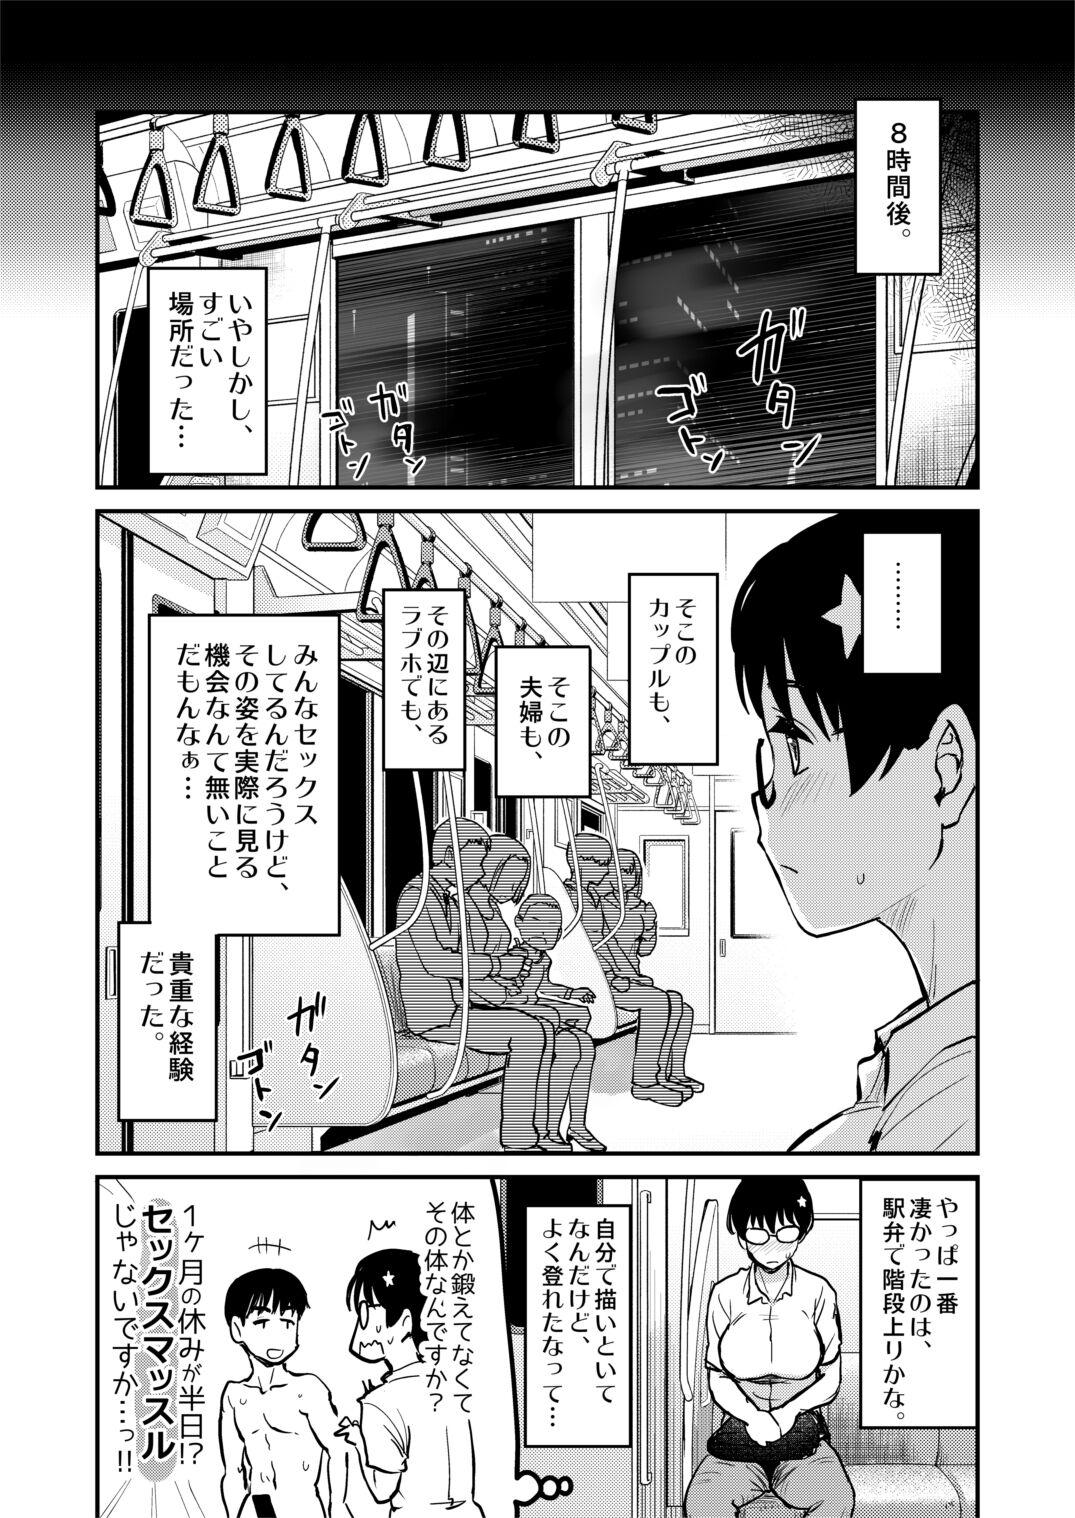 Jibun no Kaita Manga ga Jissha AV ni!? Sekkaku nano de Satsuei Genba no Kengaku ni Ittekimashita. 23